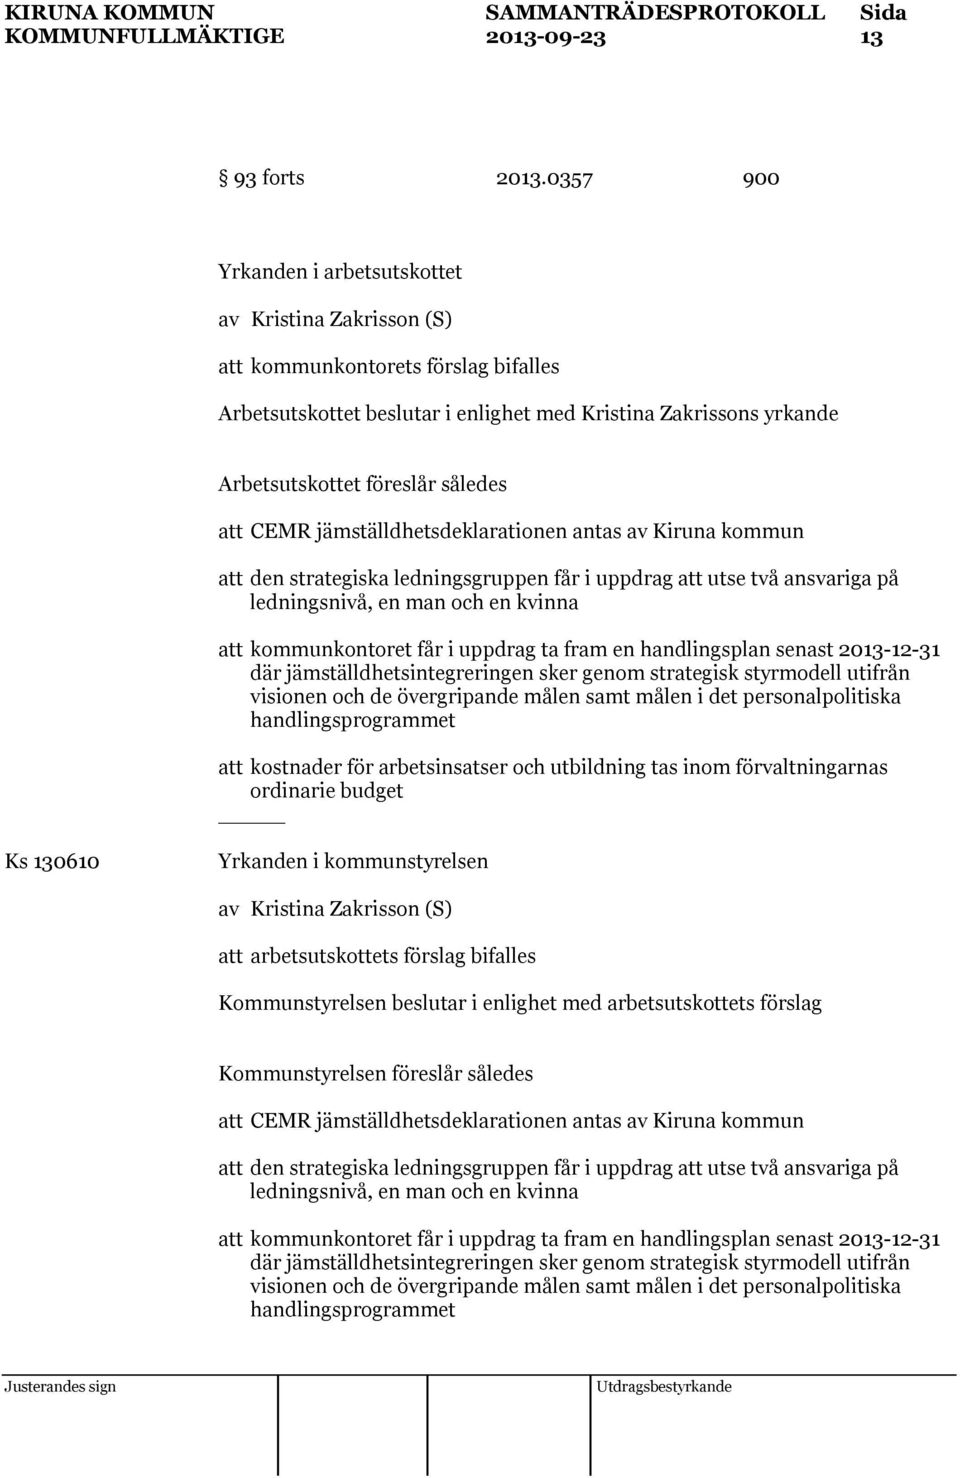 jämställdhetsdeklarationen antas av Kiruna kommun att den strategiska ledningsgruppen får i uppdrag att utse två ansvariga på ledningsnivå, en man och en kvinna att kommunkontoret får i uppdrag ta